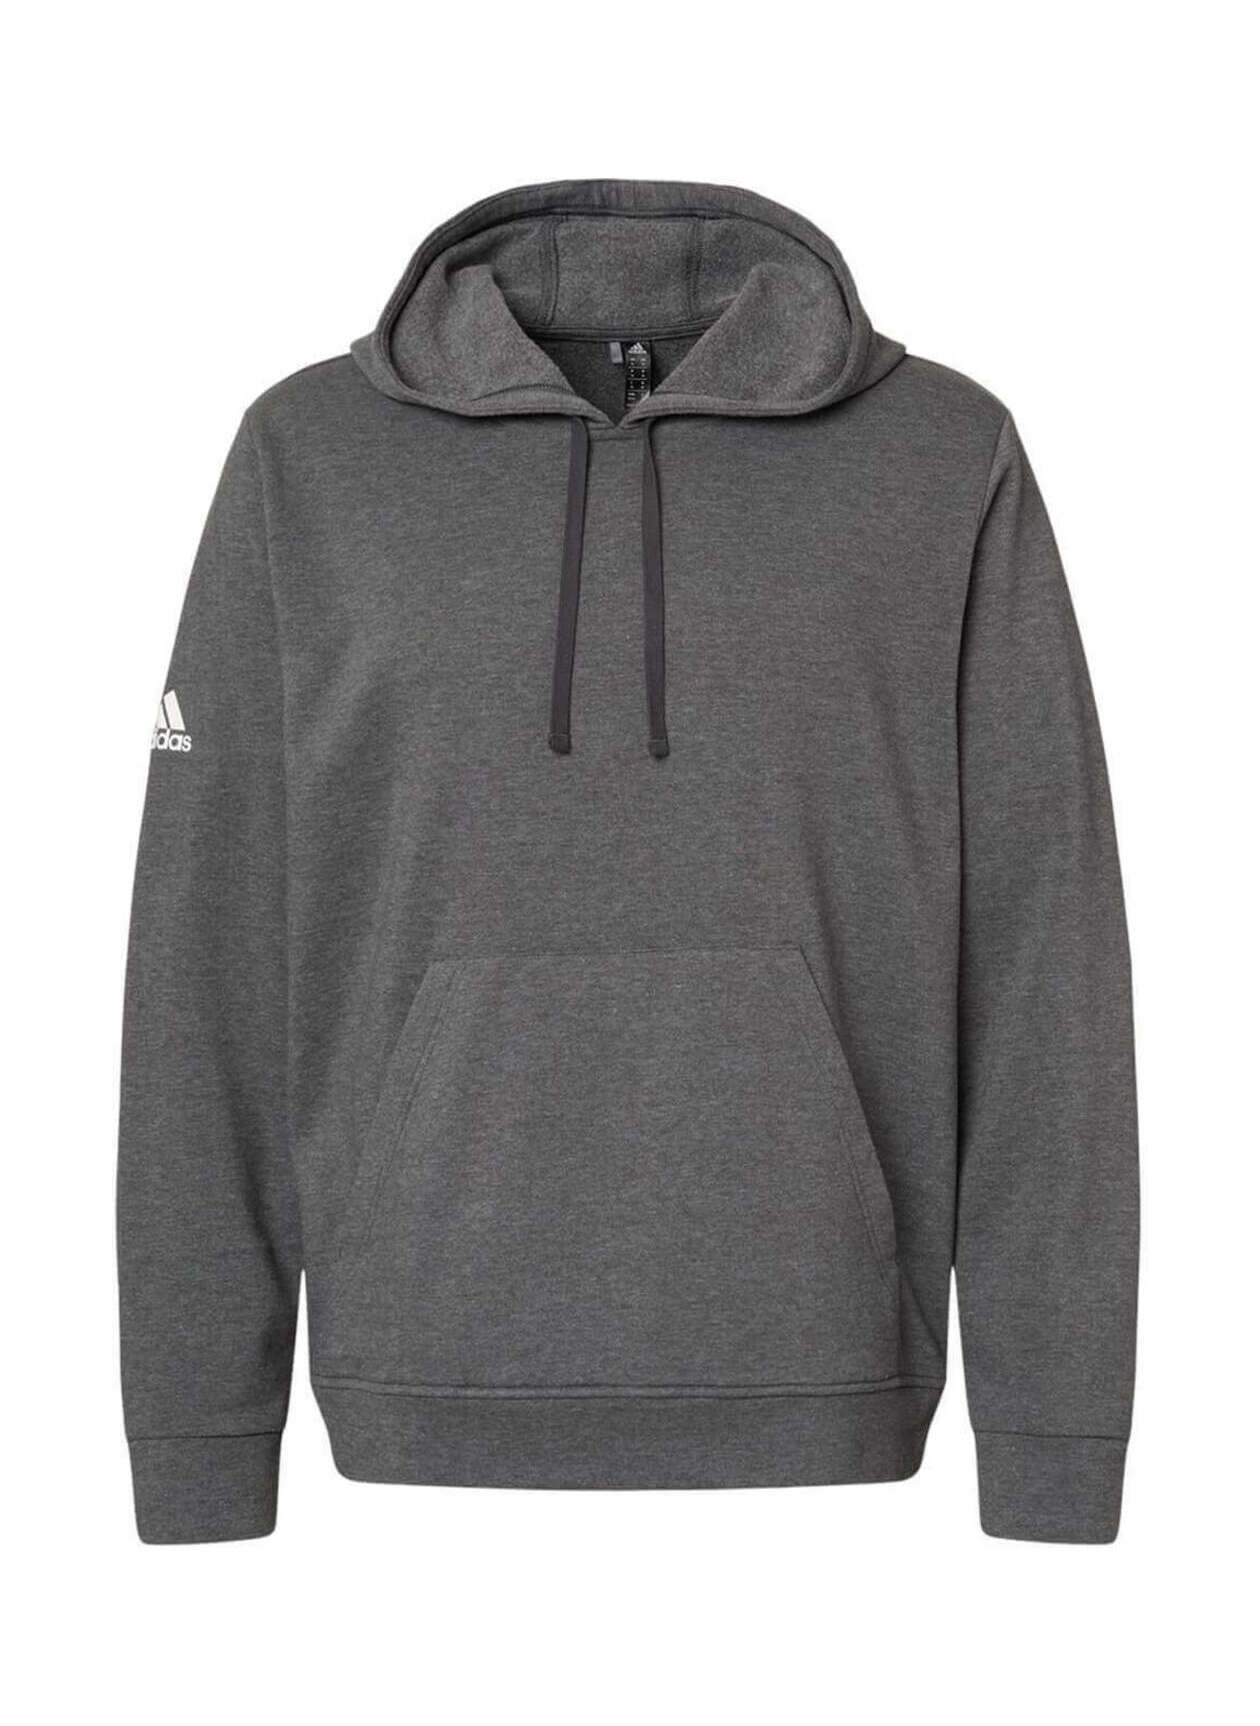 Adidas Men's Dark Grey Heather Fleece Hooded Sweatshirt